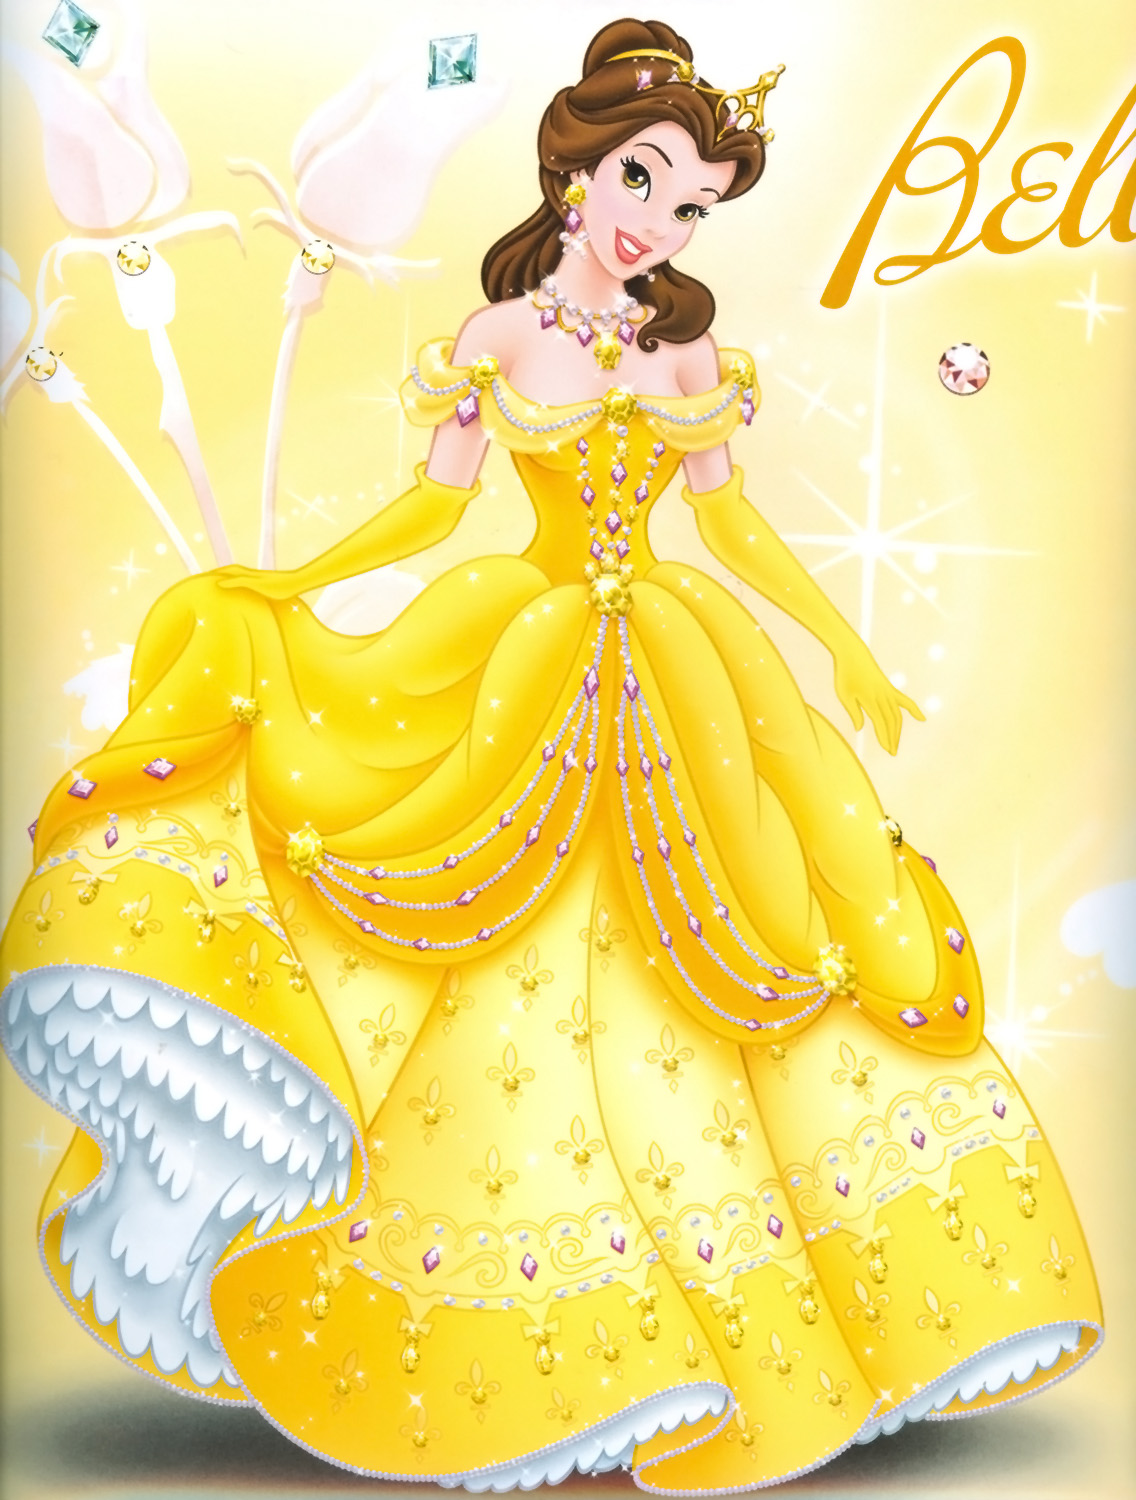 Принцесса Дисней в золотом платье Бель